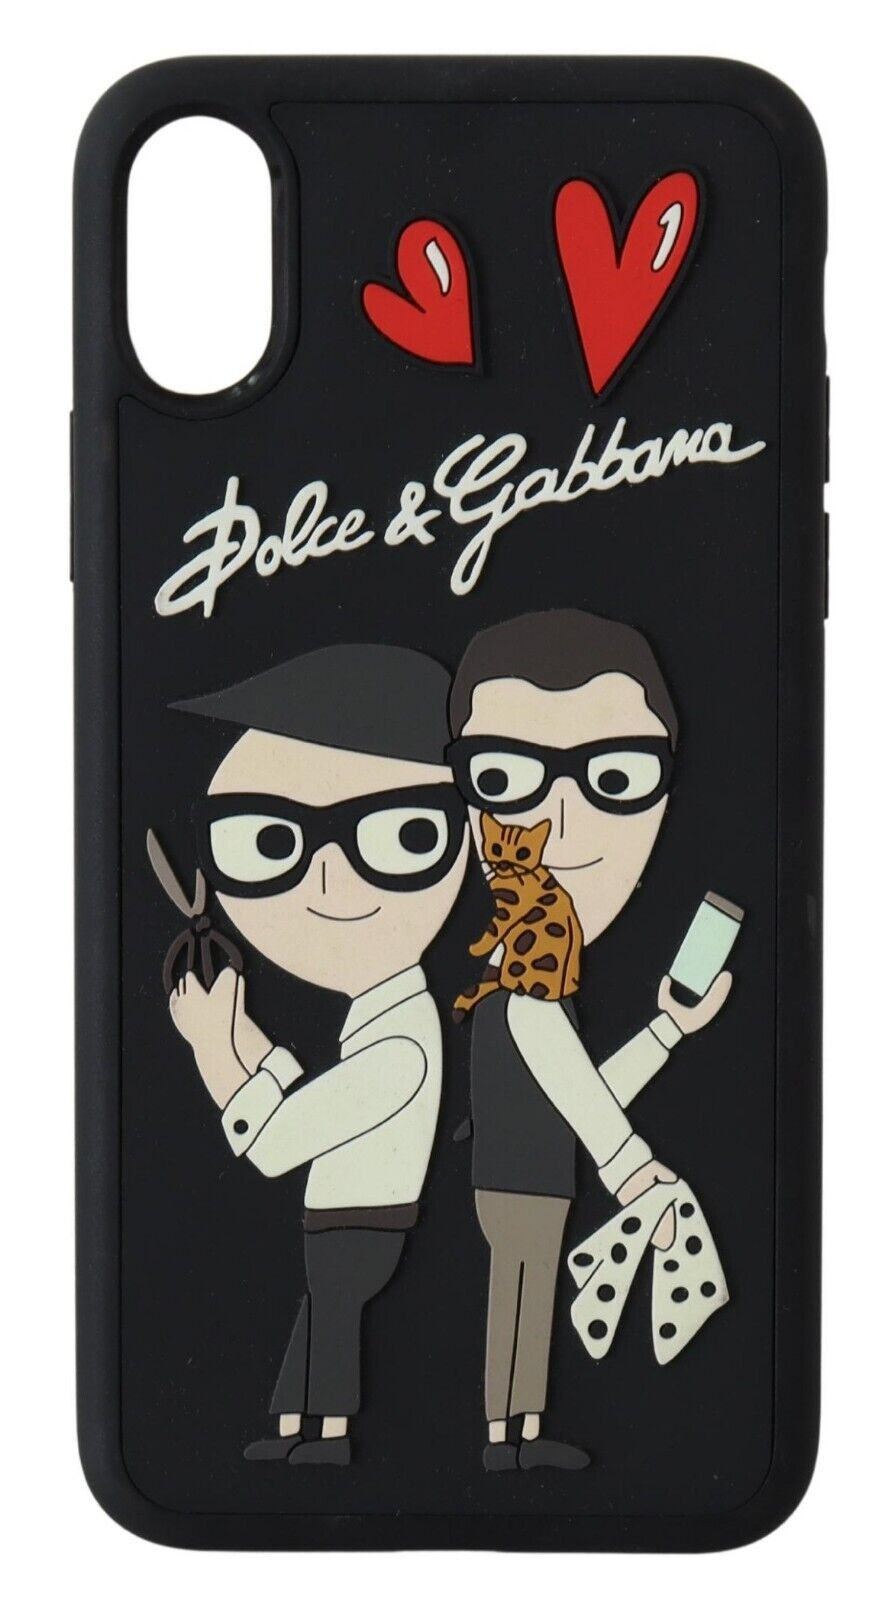 Чехол для телефона DOLCE & GABBANA, черный чехол с логотипом #DGFamily для iPhone X-XS. Рекомендуемая розничная цена — 300 долларов США.